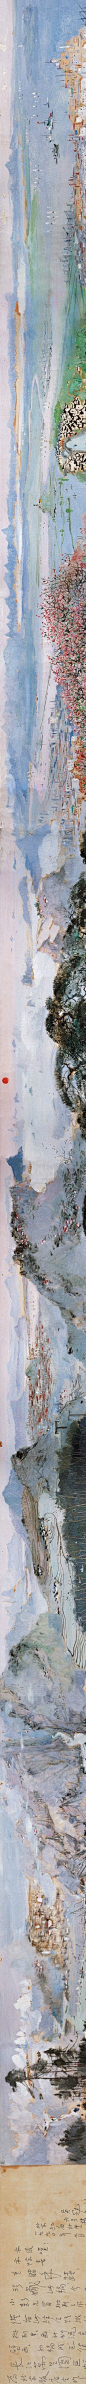 吴冠中 《长江万里图》 纸本油彩，22.5×509cm。 此图打破了油画二维平面的创造范畴，以中国传统的手卷形式展开内容，将时间和空间融合于一，叙事性和画面的形式美感得到完美结合，西画技法与传统的“江山卧游”概念得到了融合，彰显出吴冠中这一时期对油画艺术和水墨艺术卓有成效的探索。